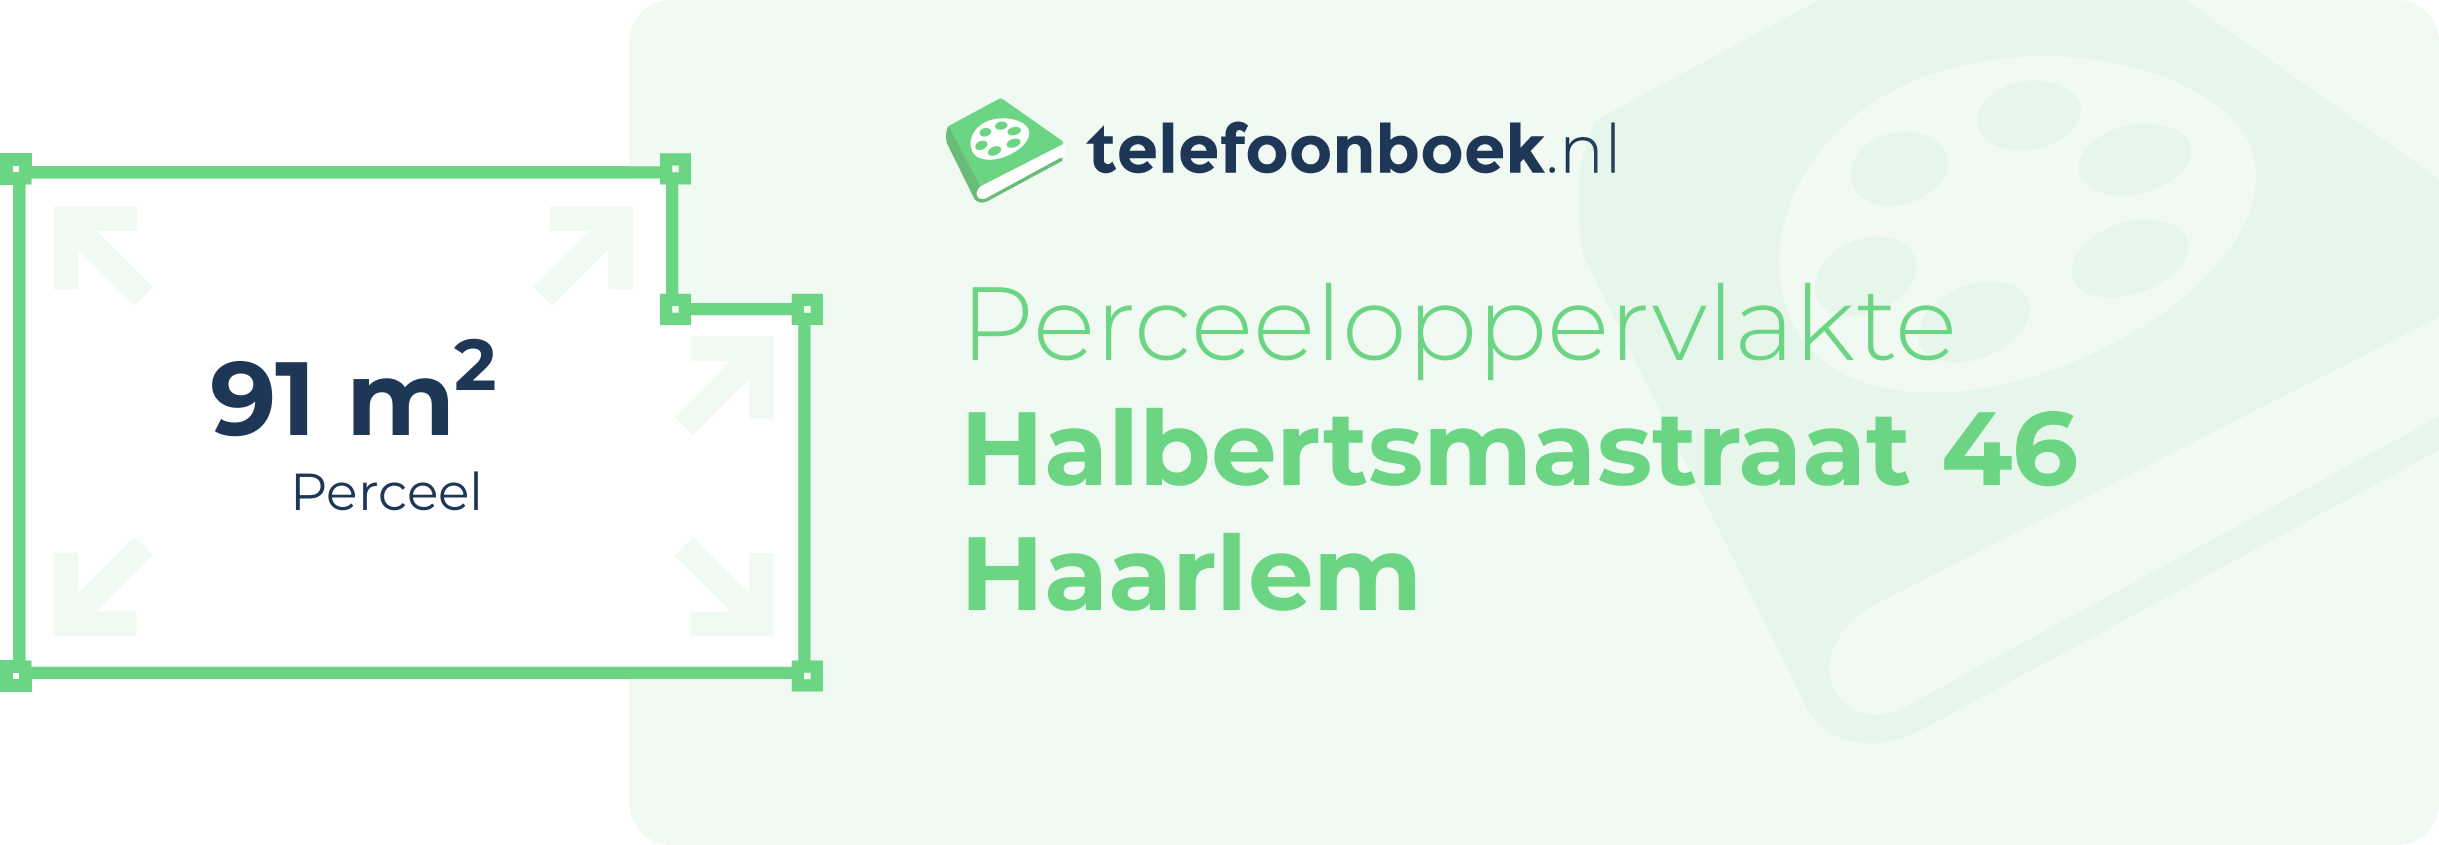 Perceeloppervlakte Halbertsmastraat 46 Haarlem